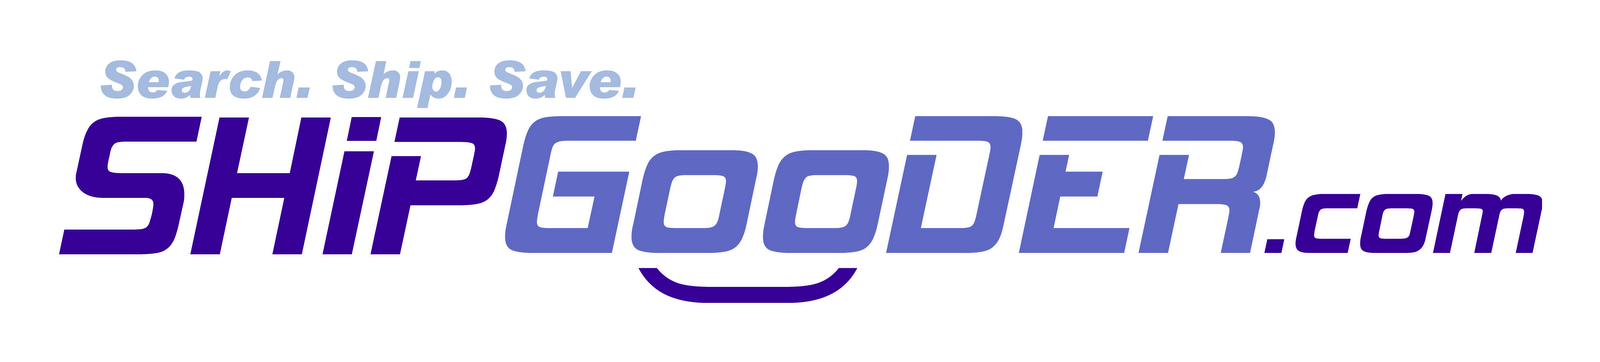 [shipgooder+logo.gif]